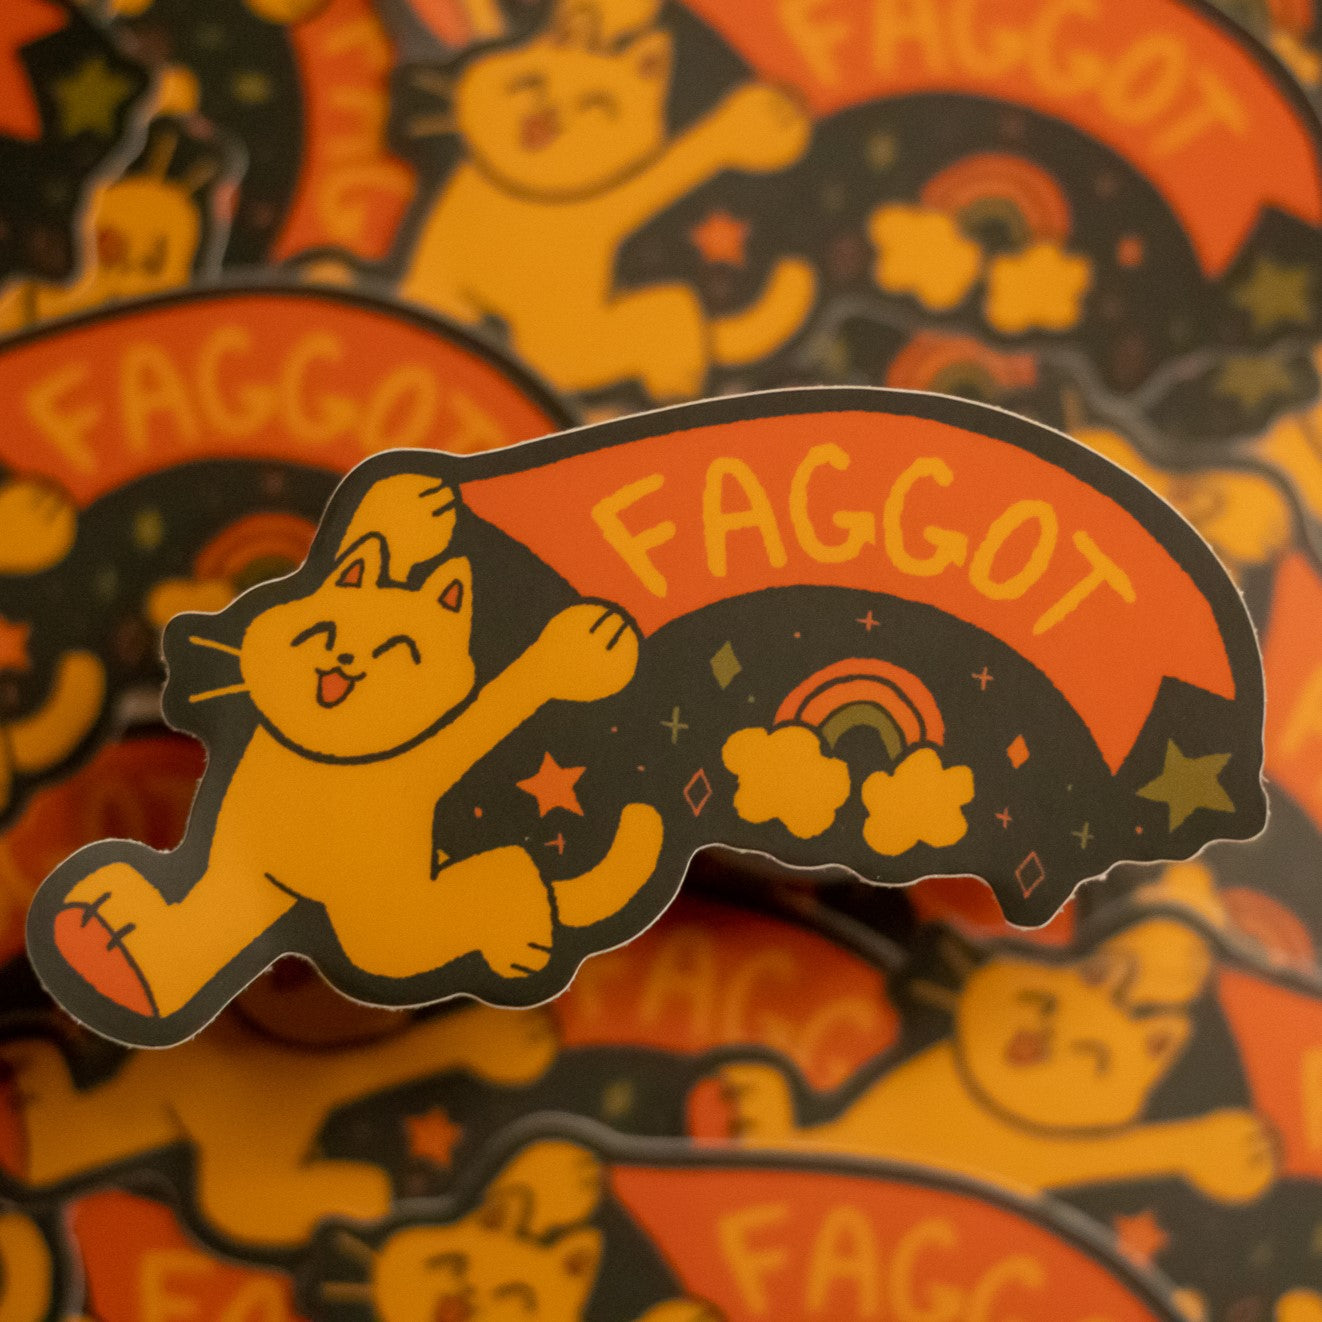 fruity & faggot stickers